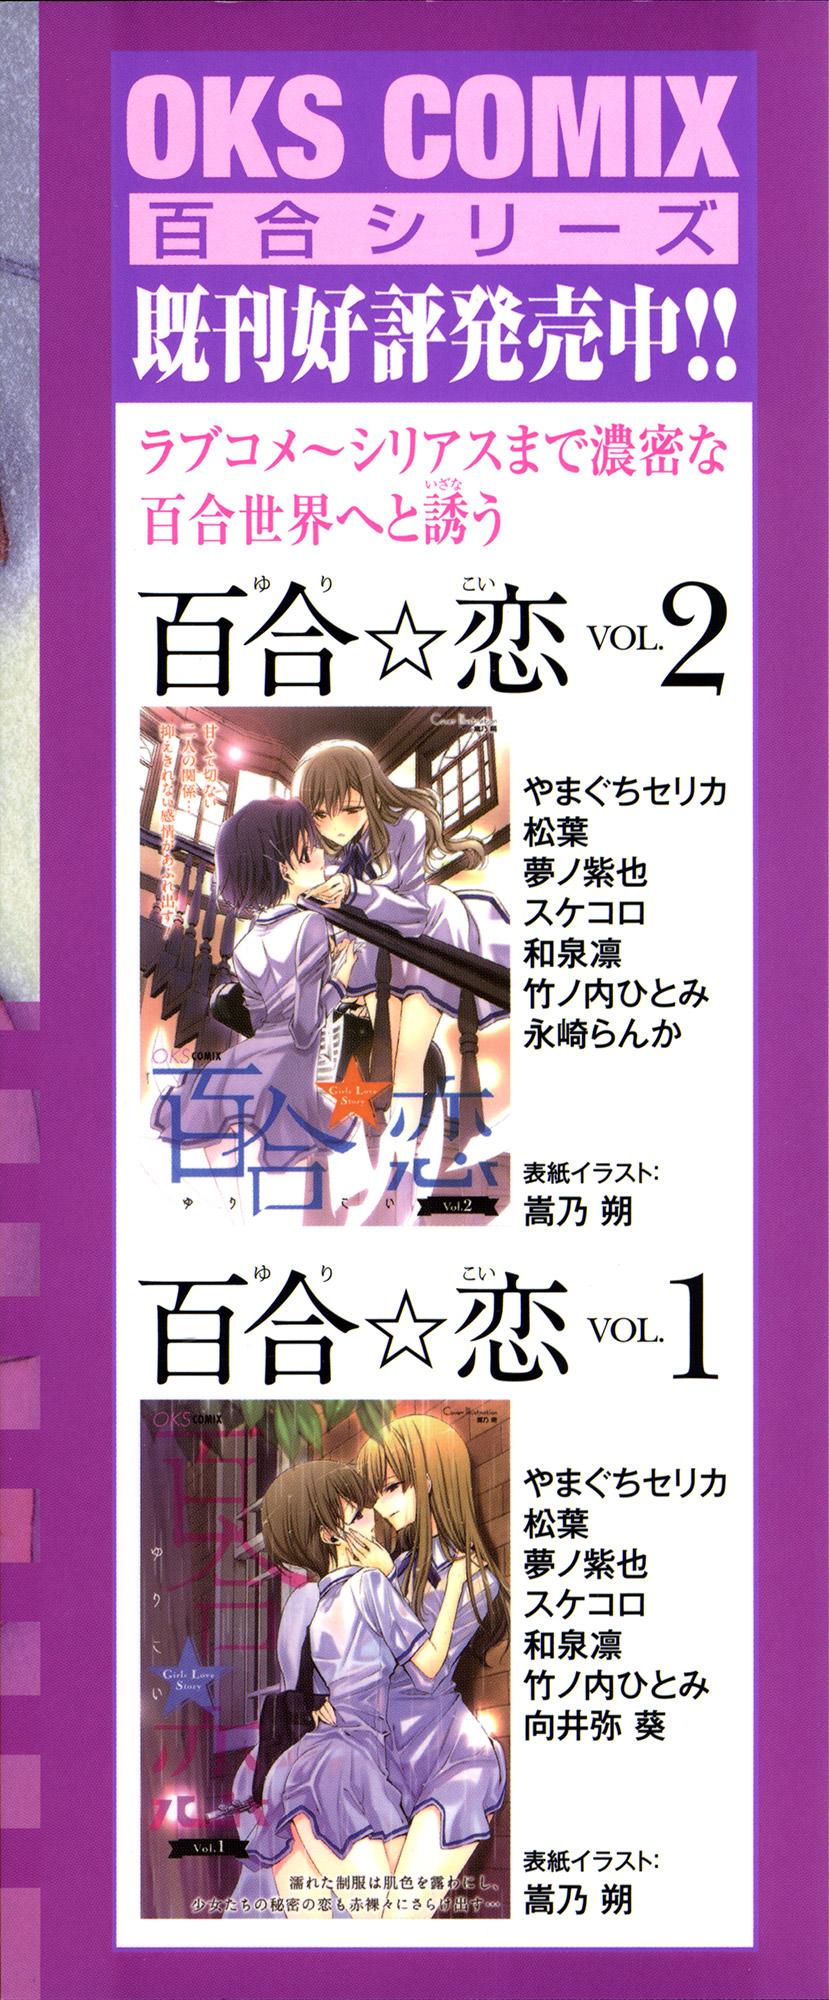 Yuri Koi Volume 3 3